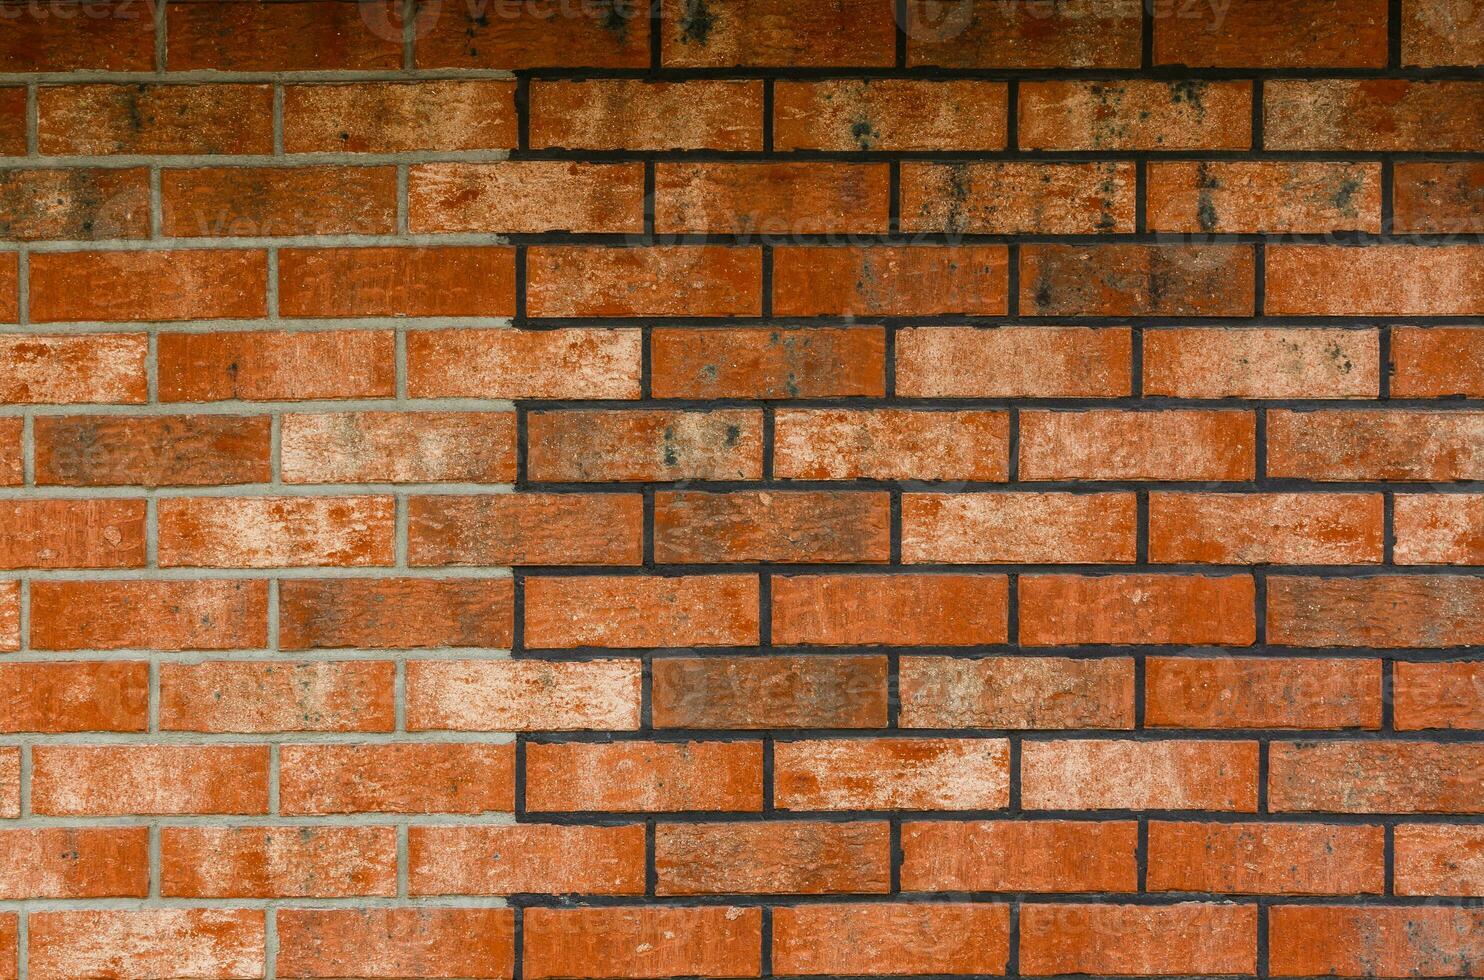 Red Brick Wall Textur Grunge-Hintergrund mit vignettierten Ecken, kann für die Innenarchitektur verwendet werden foto